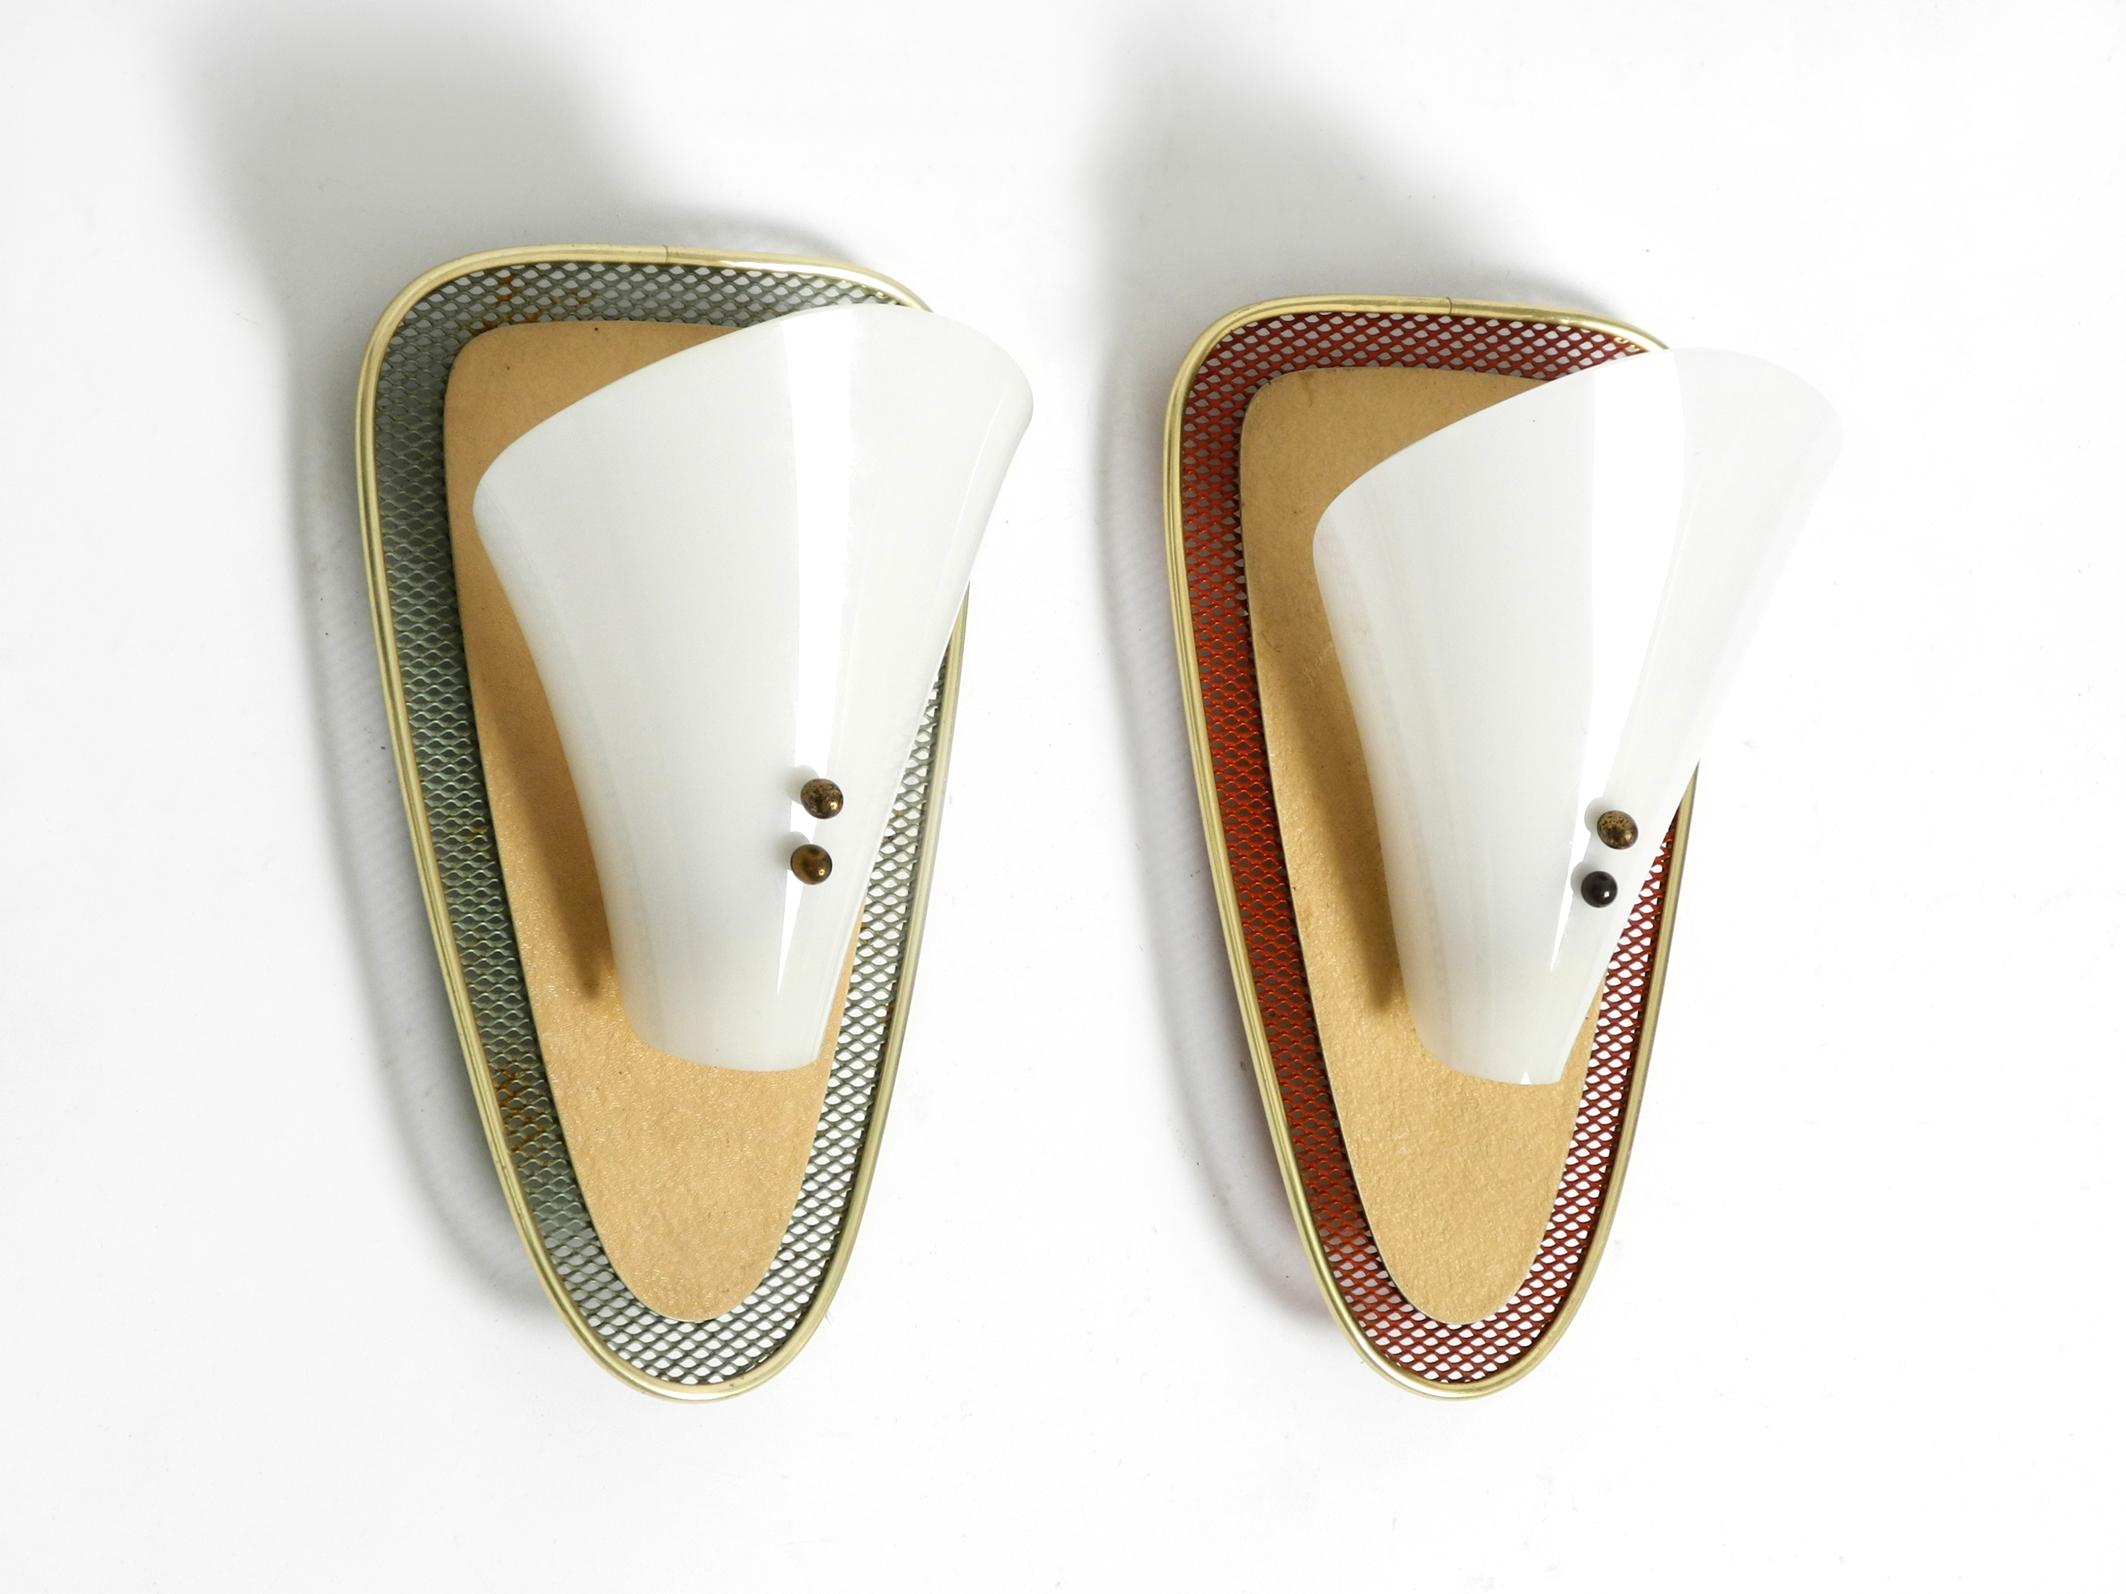 Paar seltene Mid Century Modern Streckmetall-Wandlampen mit Plexiglasschirmen.
Typisch schönes 50er-Jahre-Design. Hochwertig verarbeitet.
Hergestellt aus rotem und grünem Streckmetall und Metallplatte in beigefarbenem Schrumpflack. Der Rand ist aus